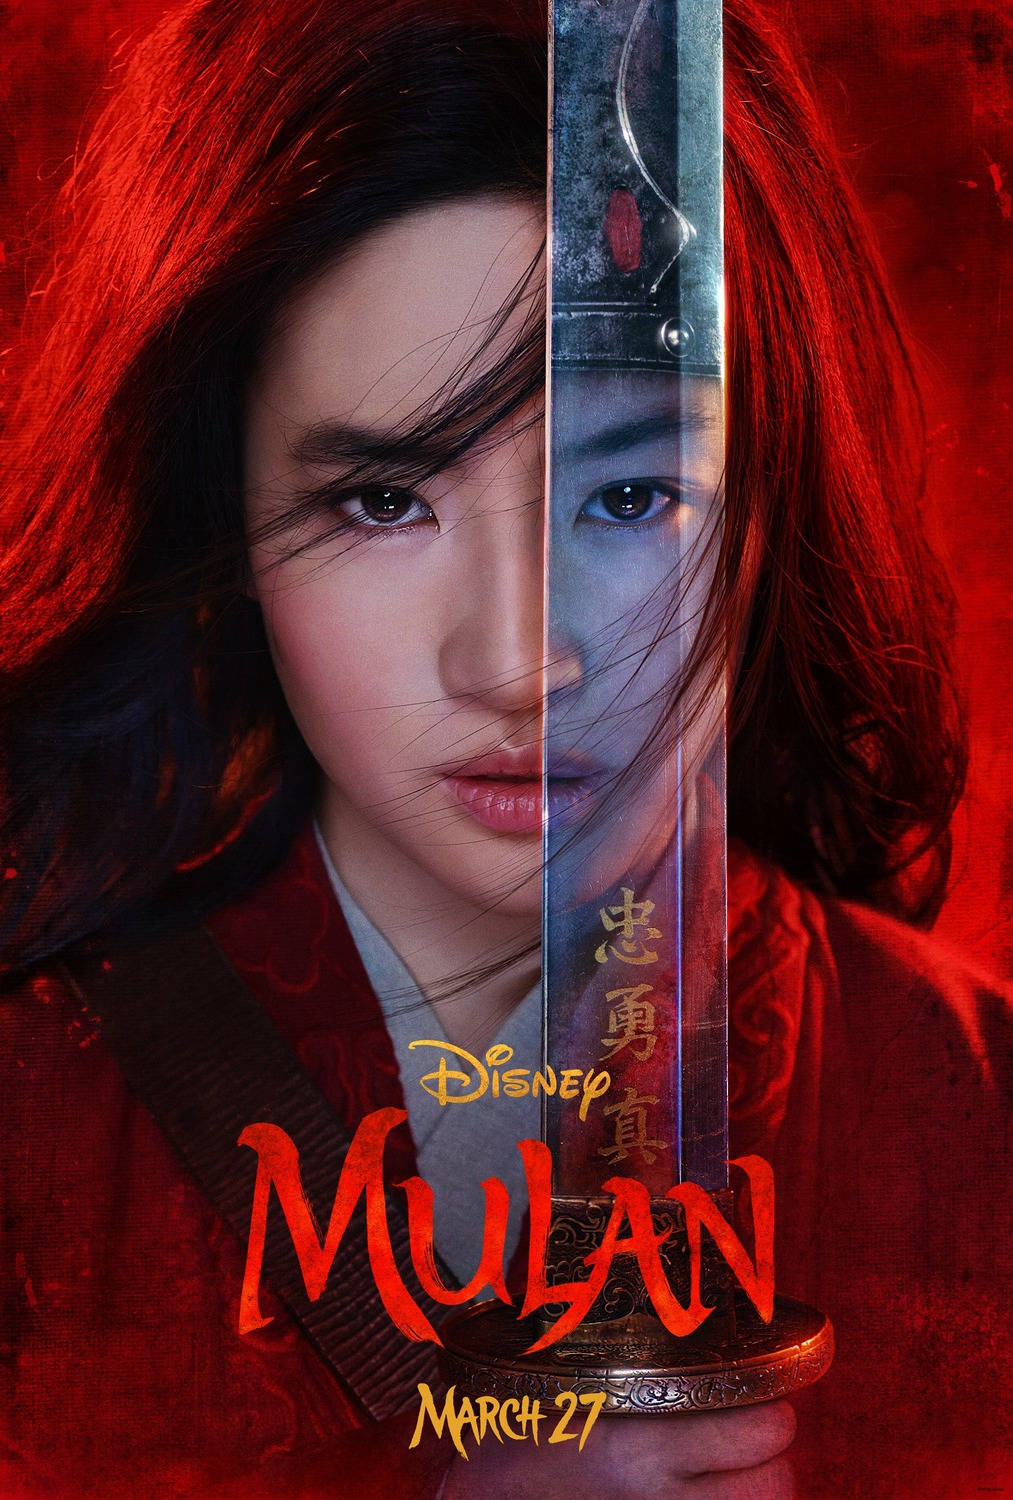 China bars media coverage of Disney's 'Mulan' after Xinjiang backlash